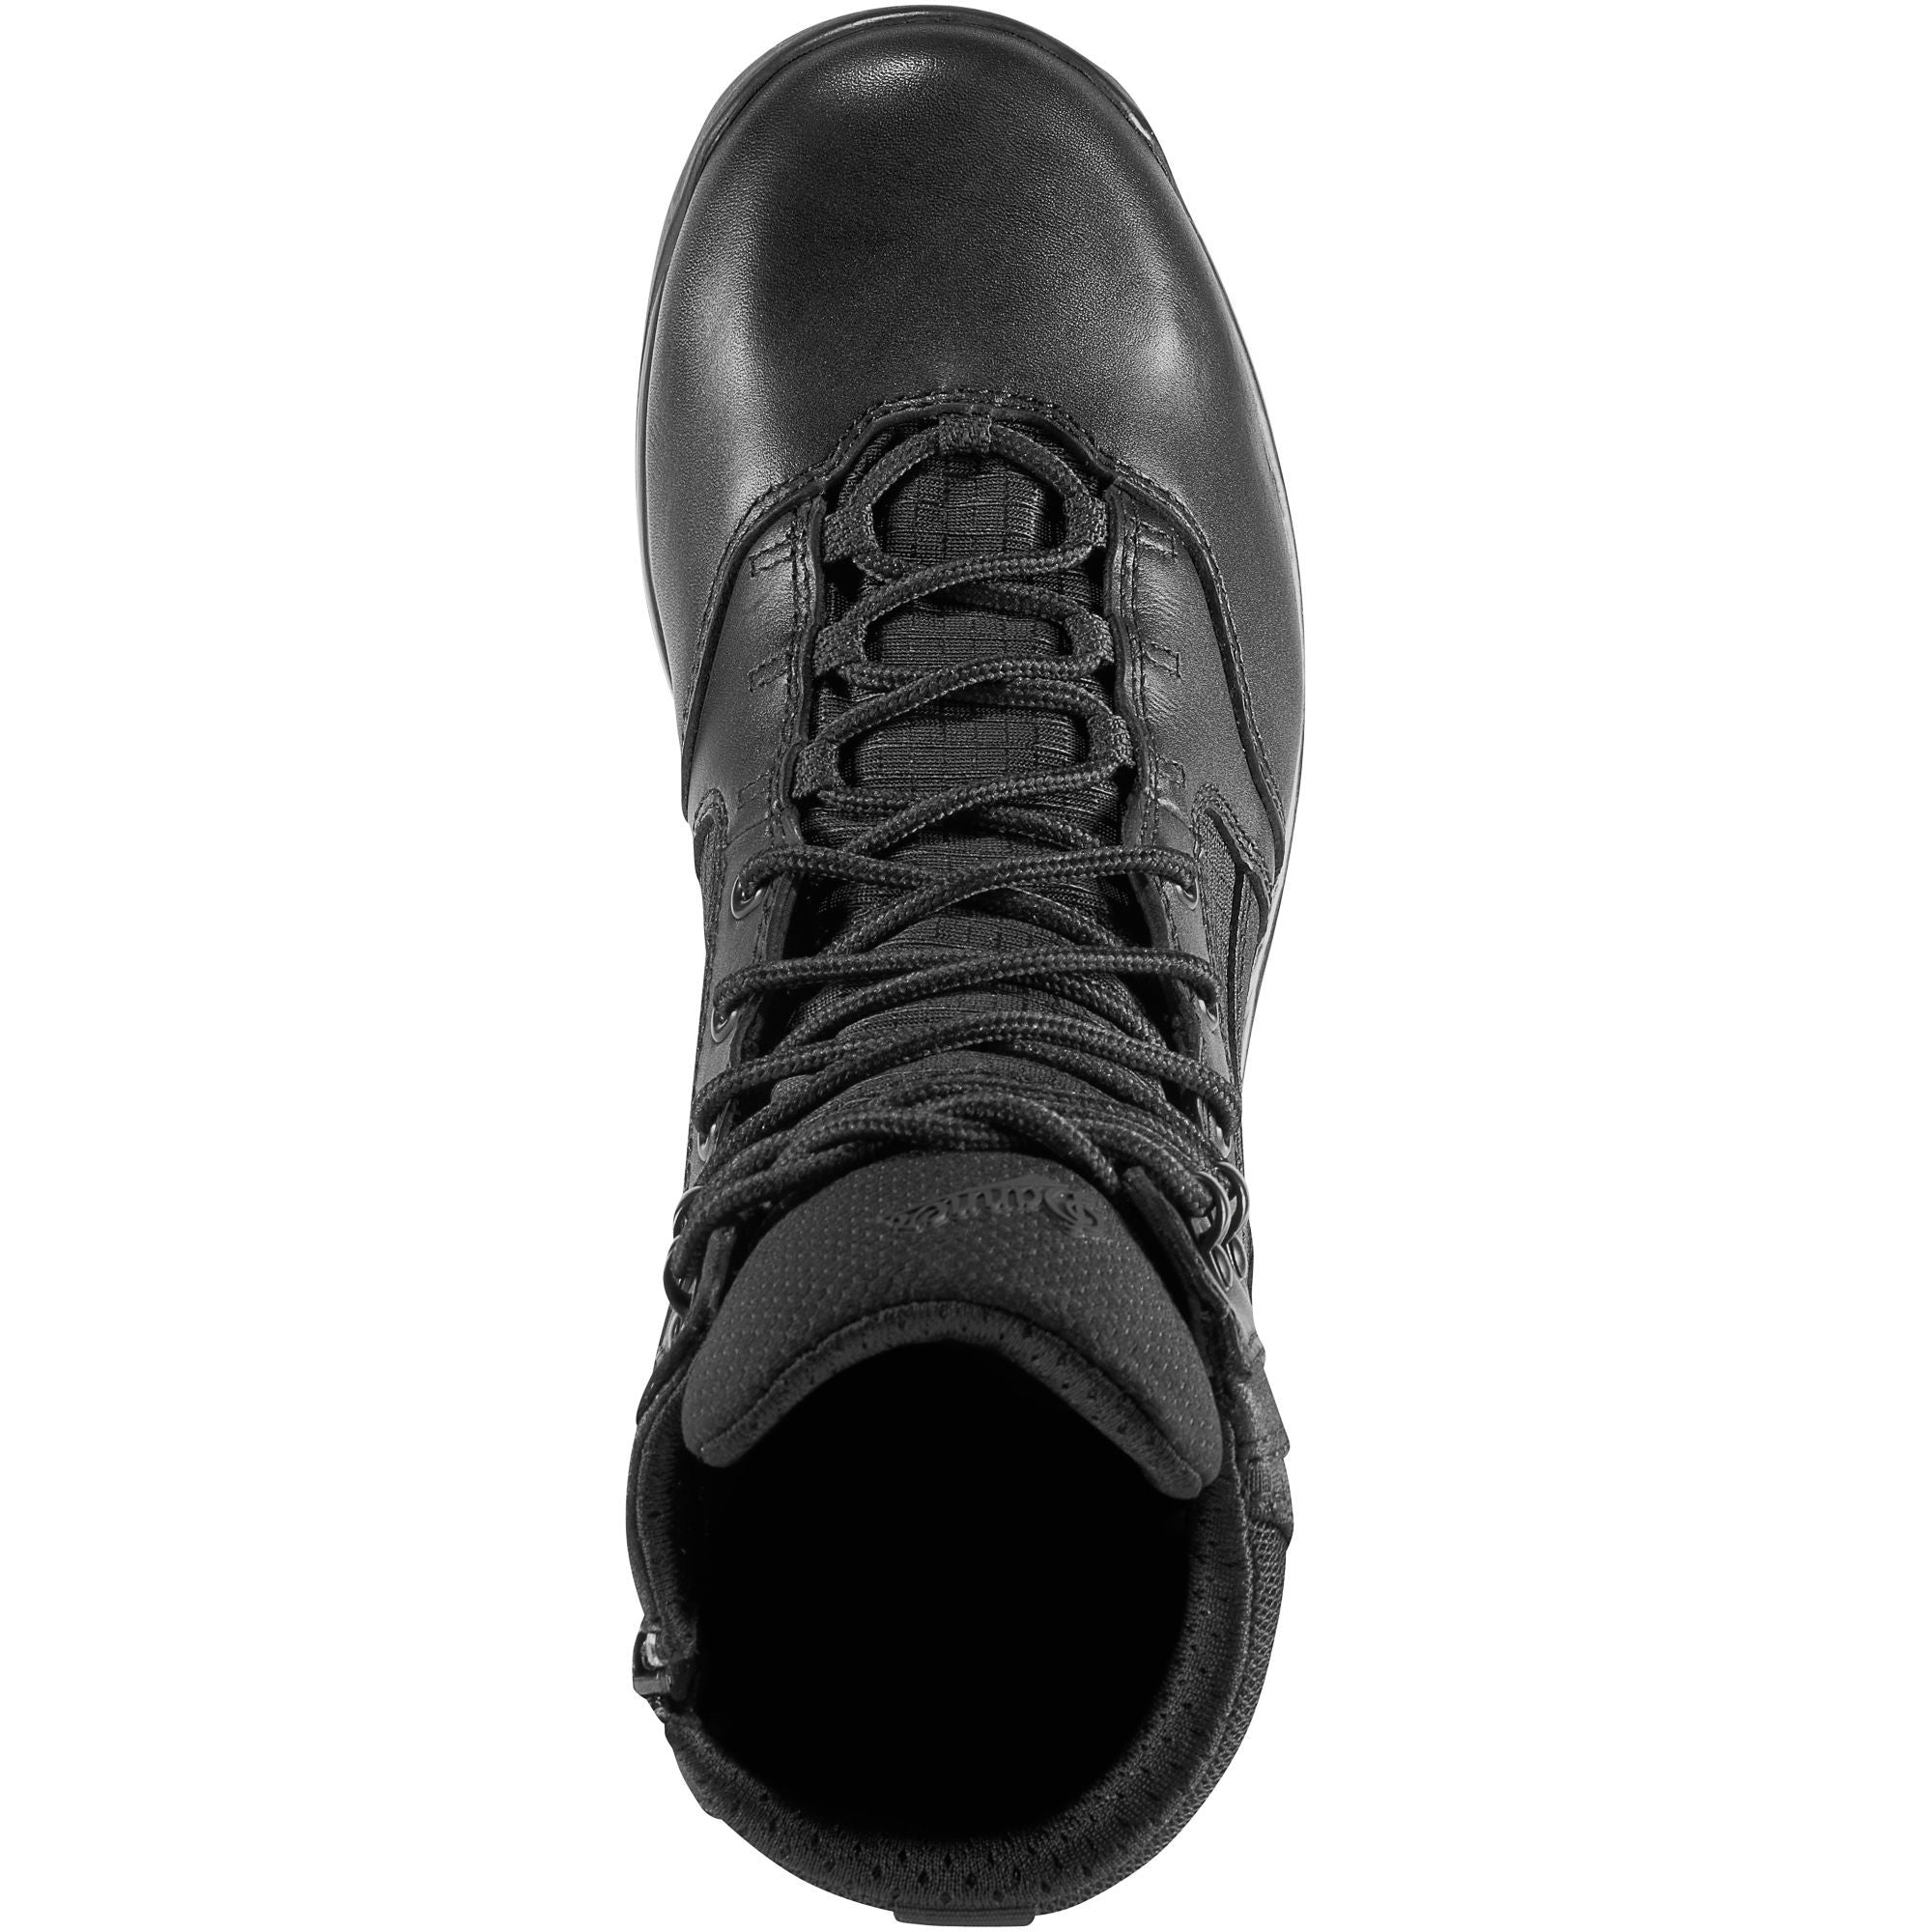 Danner Men's Kinetic 6" Side Zip Waterproof Duty Boot - Black - 28017  - Overlook Boots